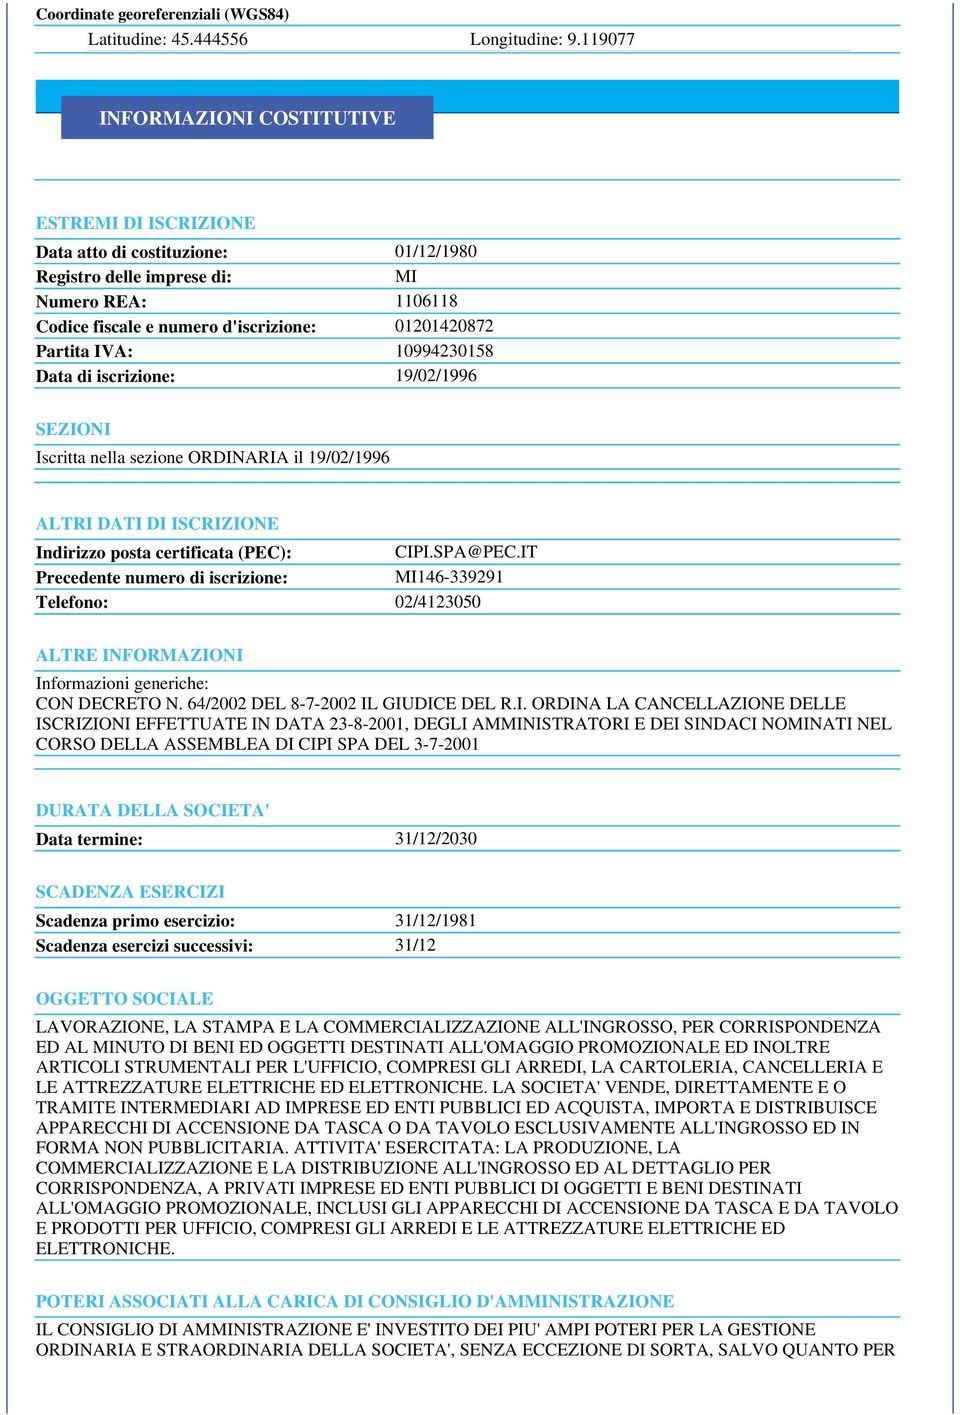 IVA: 10994230158 Data di iscrizione: 19/02/1996 SEZIONI Iscritta nella sezione ORDINARIA il 19/02/1996 ALTRI DATI DI ISCRIZIONE Indirizzo posta certificata (PEC): CIPI.SPA@PEC.